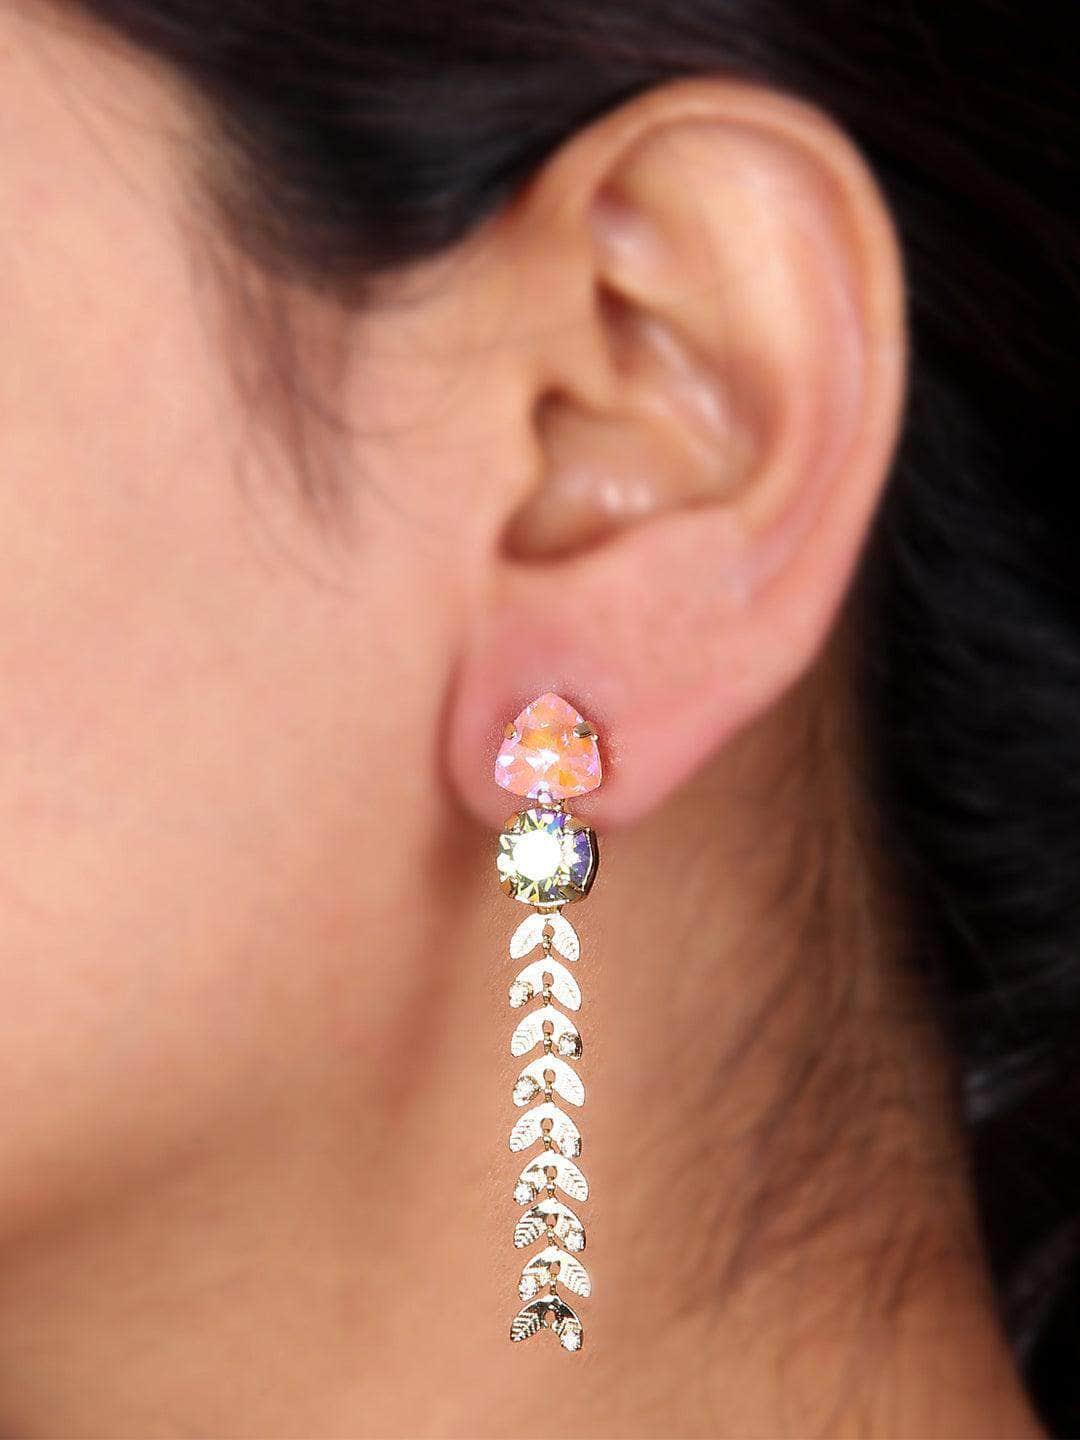 Ishhaara Crystal Trail Earrings Pink